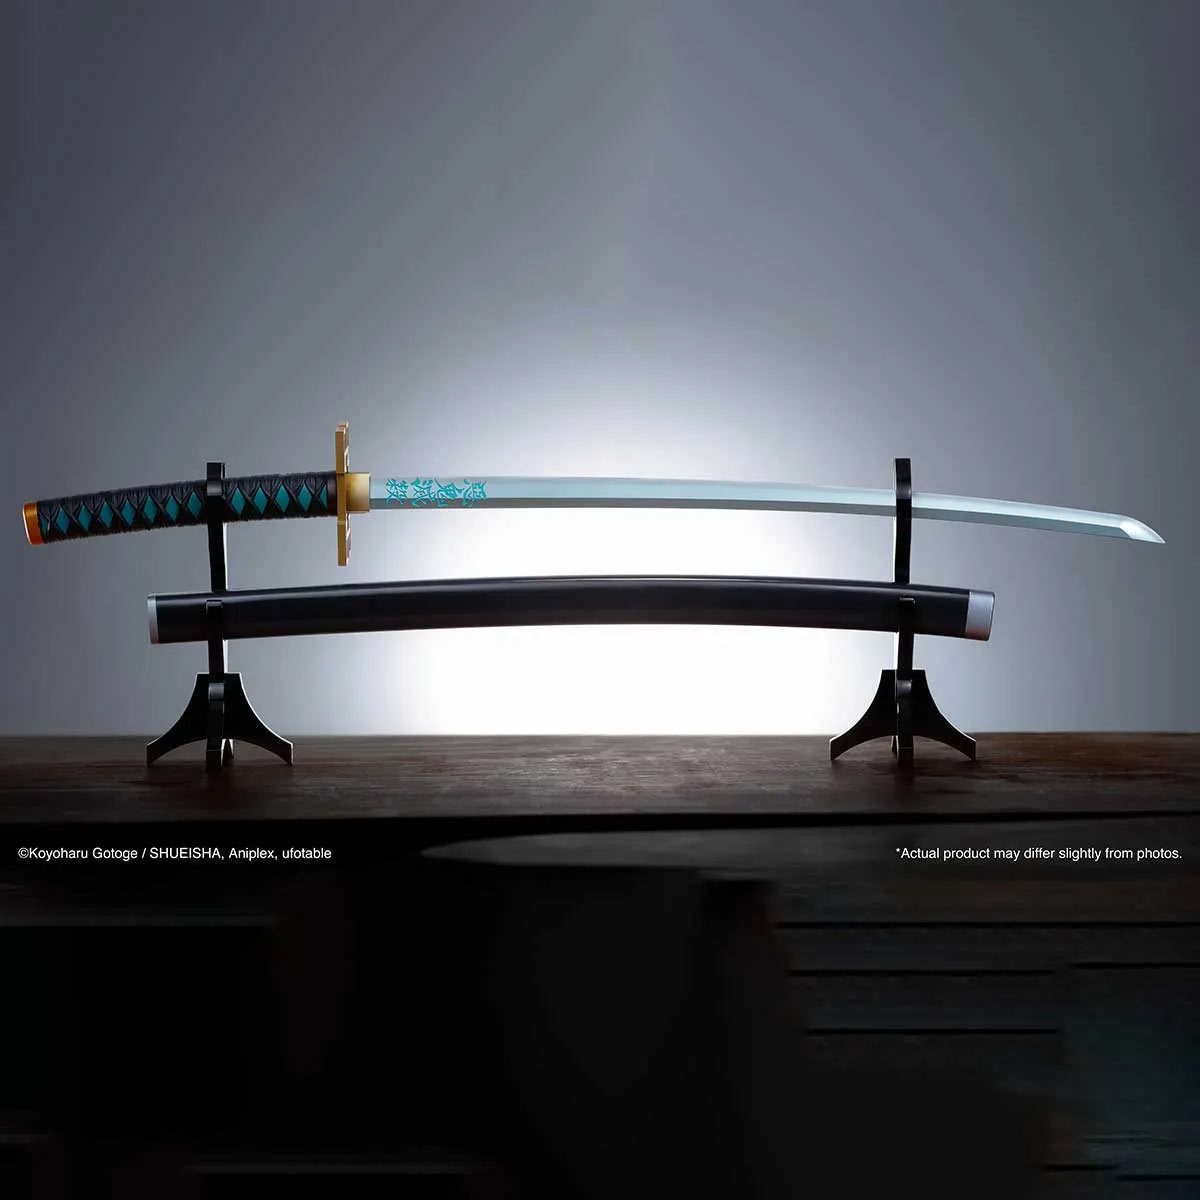 Nichirin Swords, Kimetsu no yaiba mod Wiki